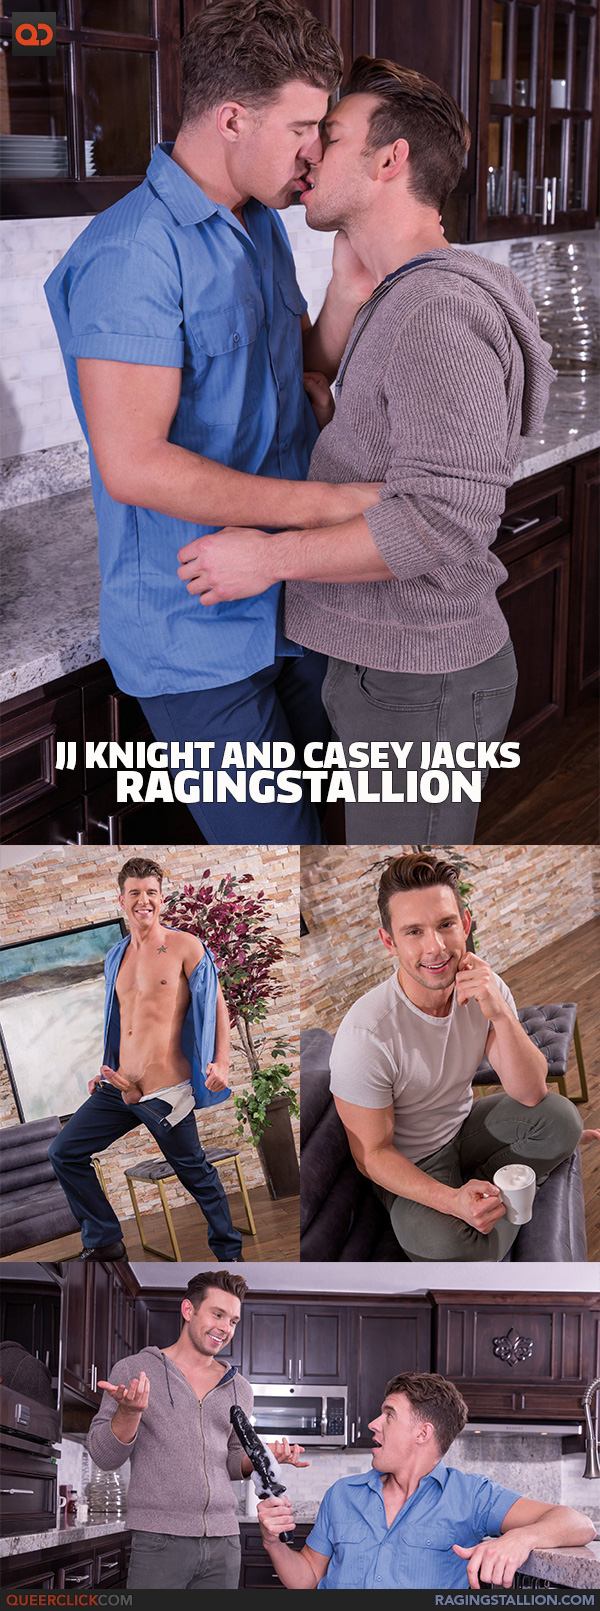 Raging Stallion: JJ Knight and Casey Jacks